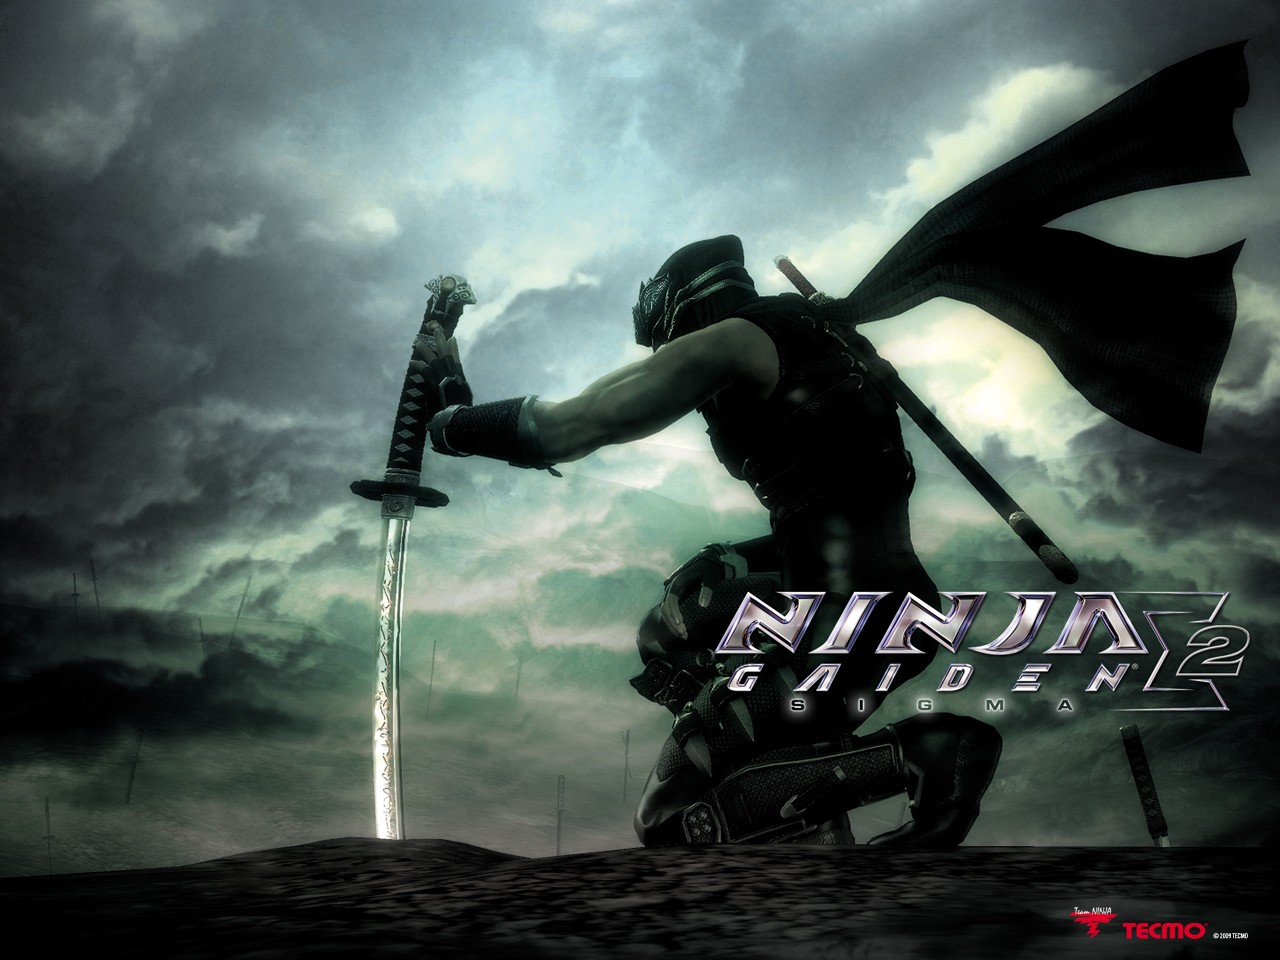 Ninja gaiden rom download